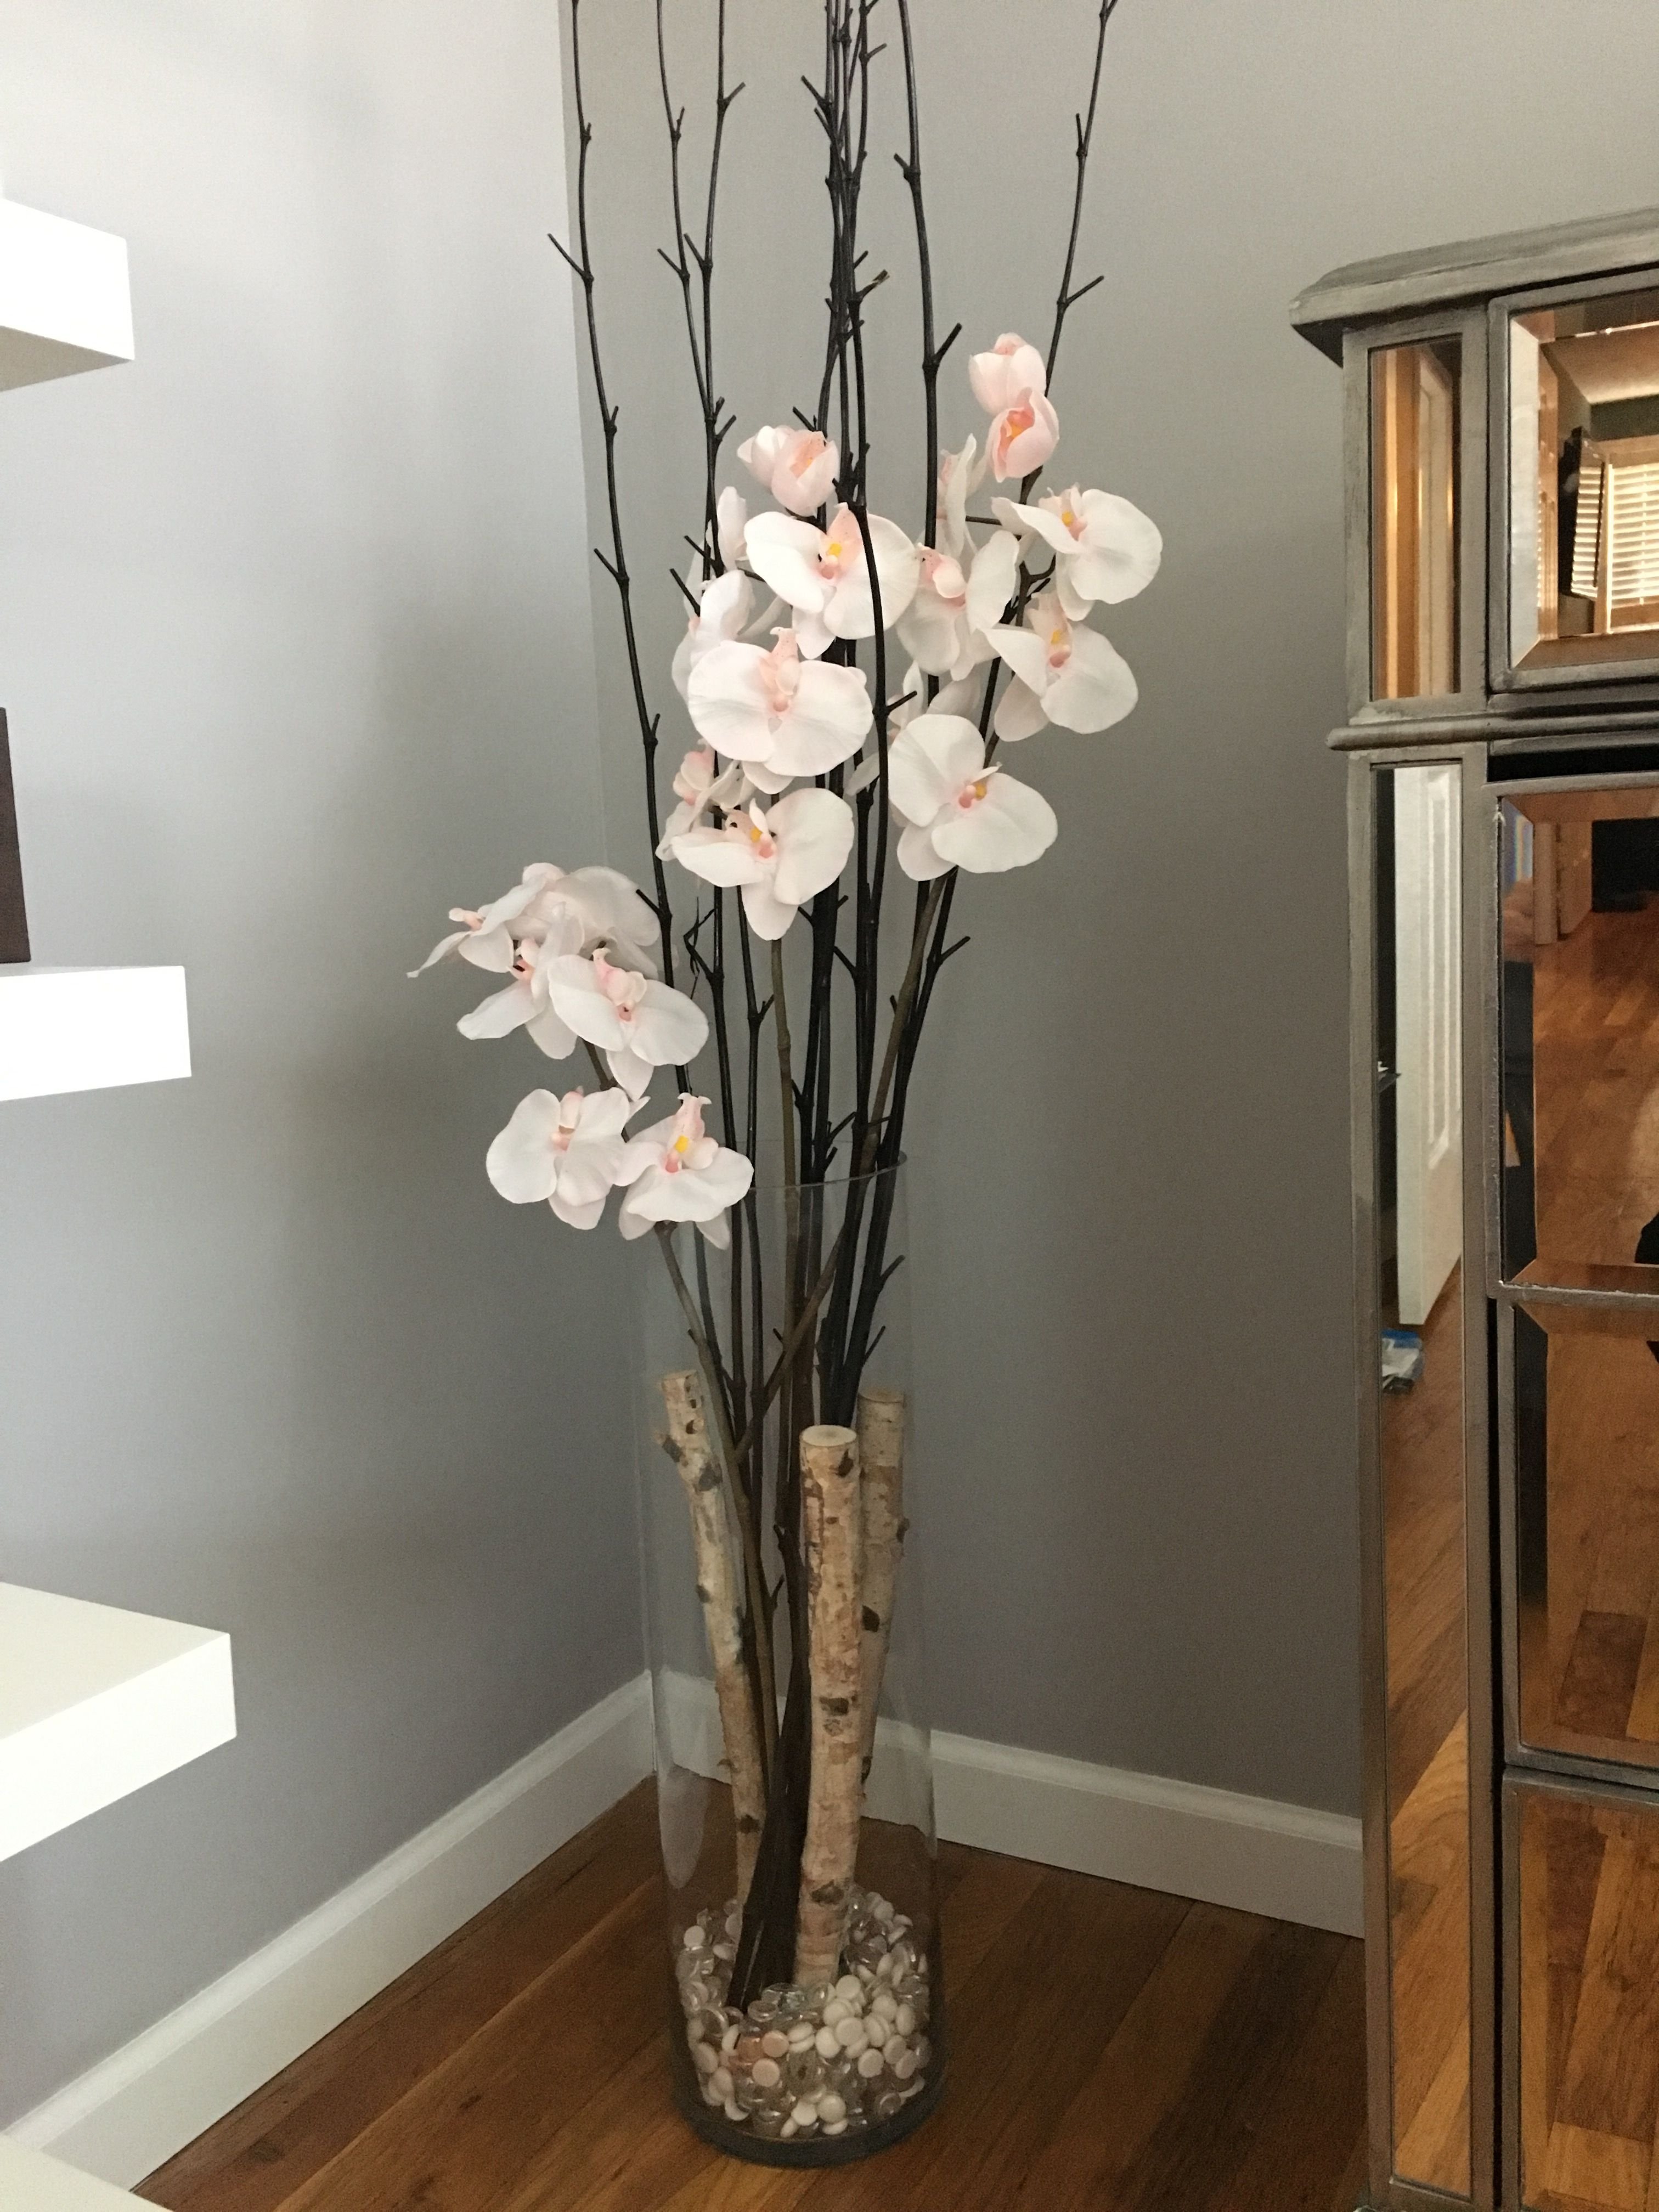 декоративные цветы для интерьера в вазу напольную